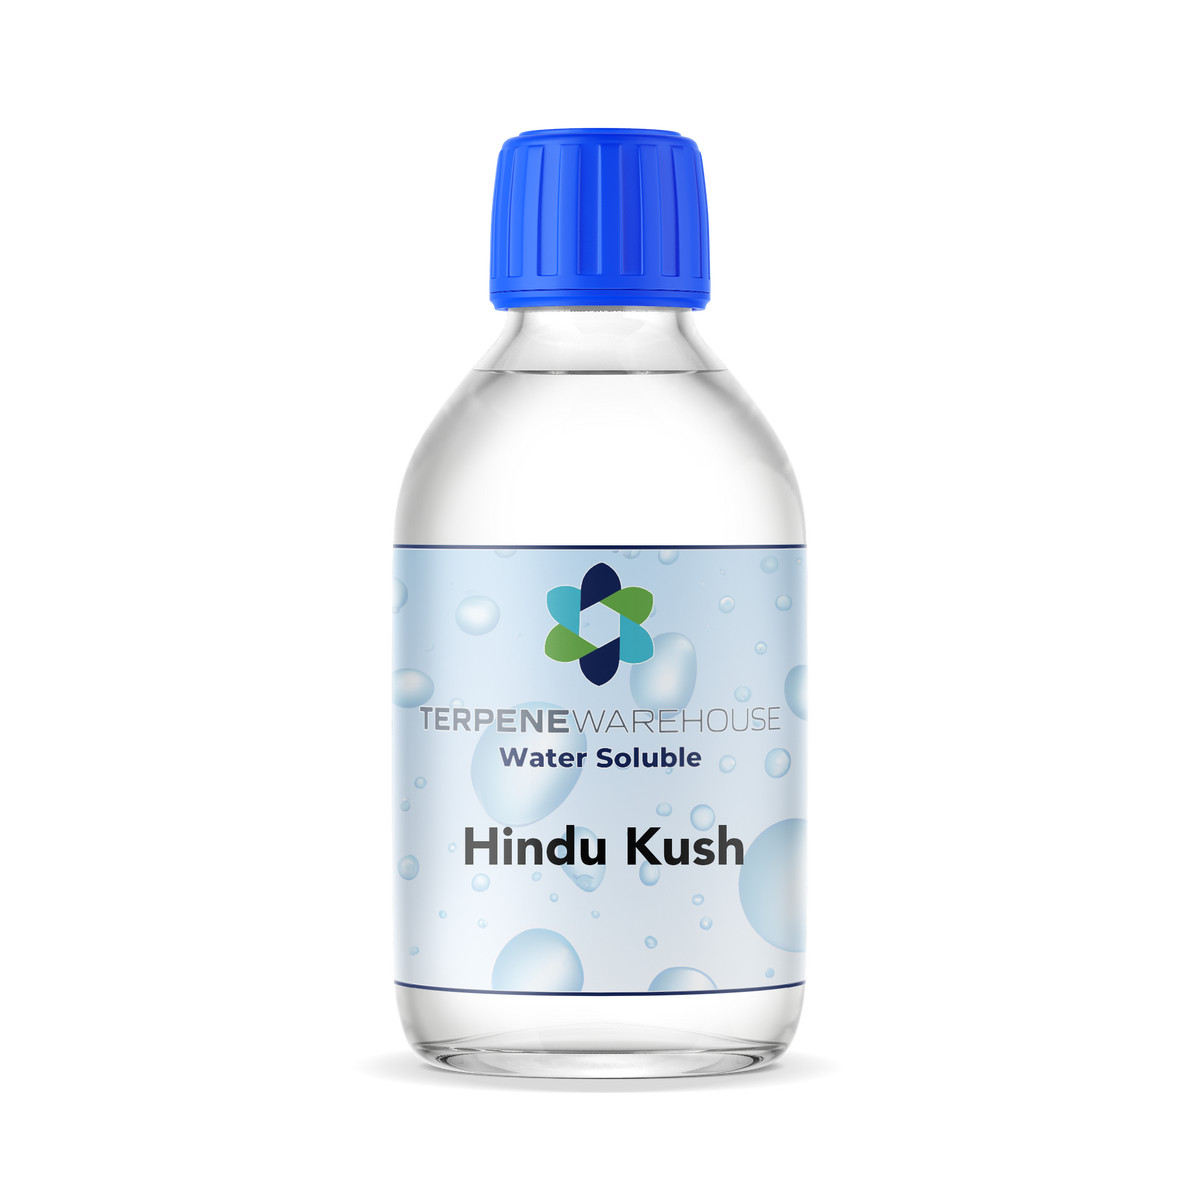 Water Soluble Hindu Kush Retail Terpene Warehouse 2039